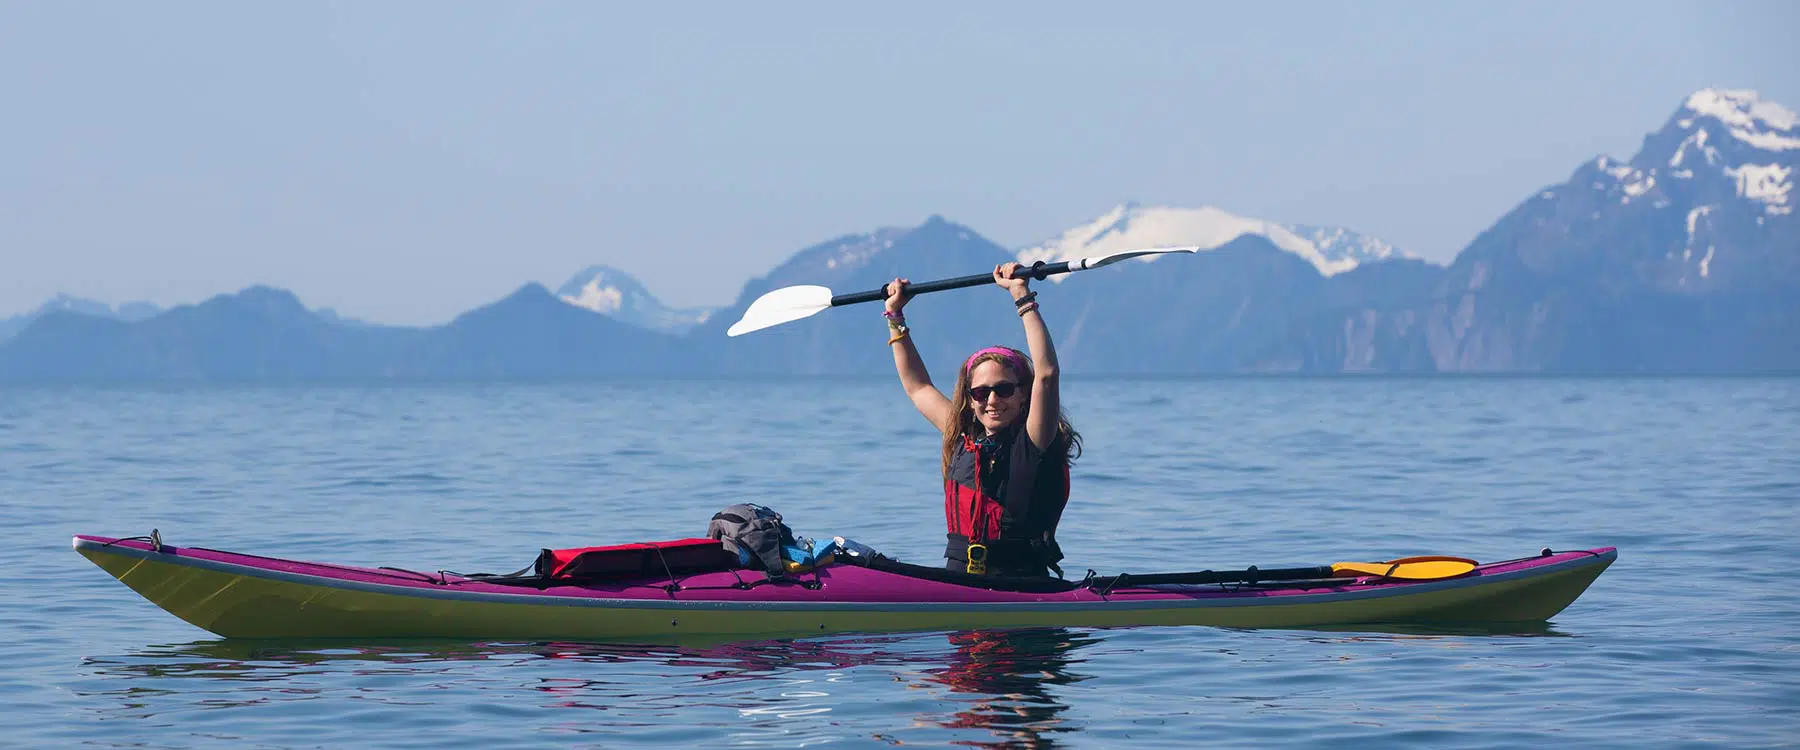 kayaking woman